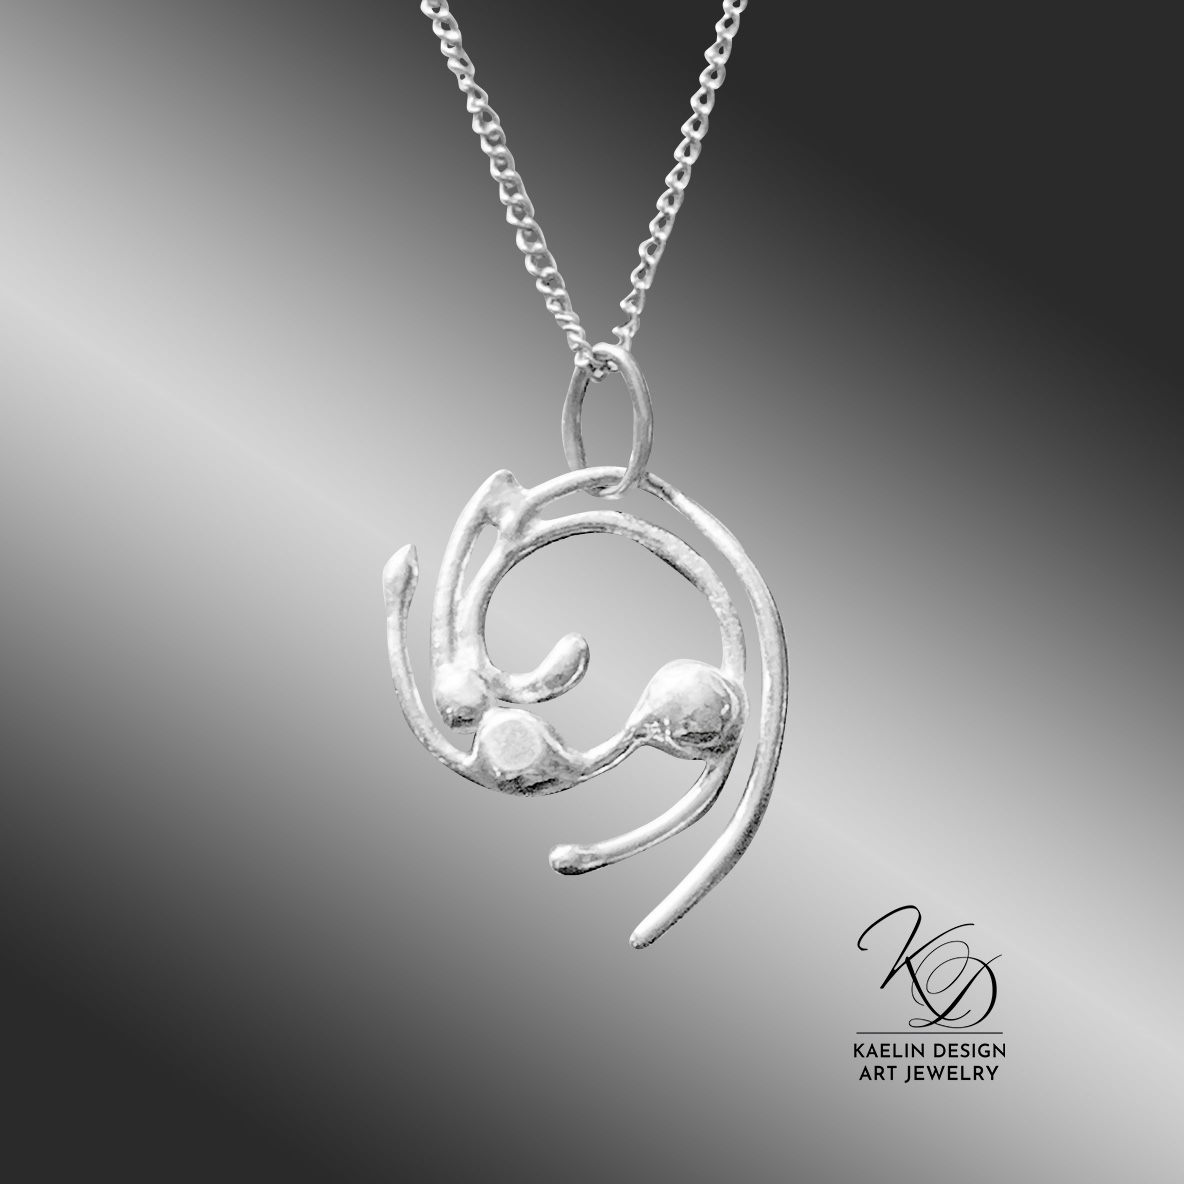 Yamuna Sterling Silver Art Jewelry Pendant by Kaelin Design